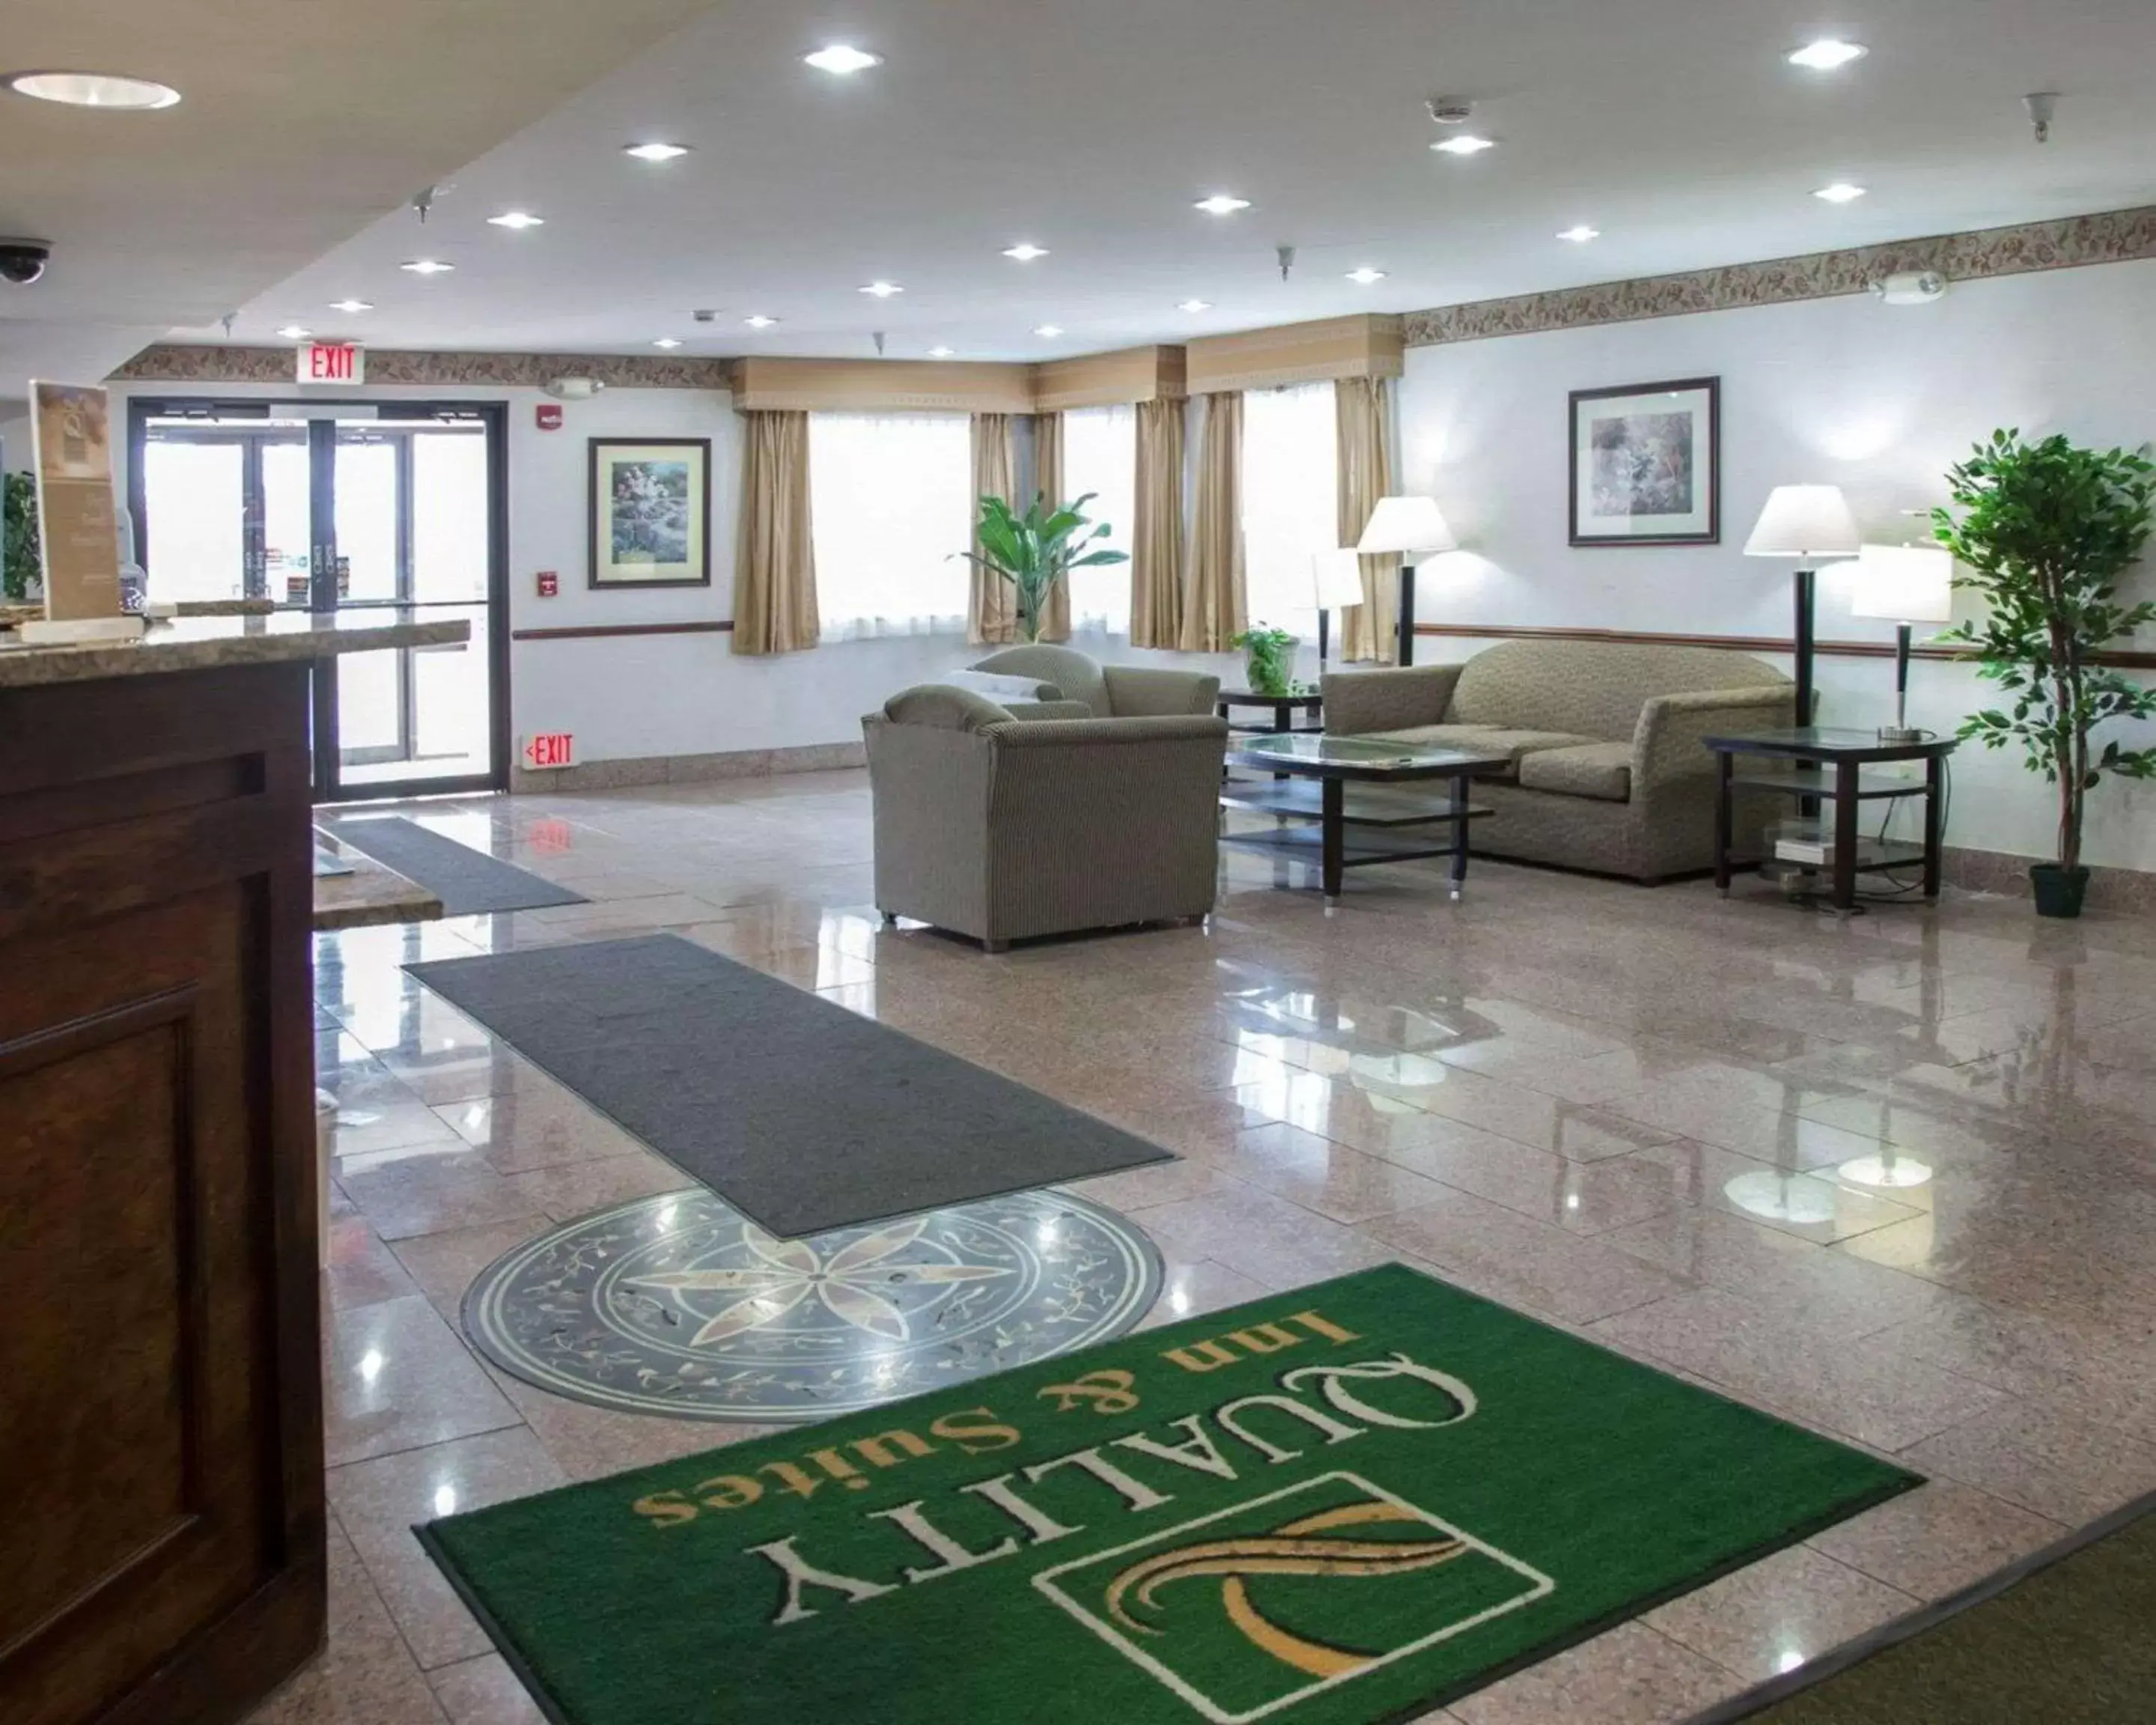 Lobby or reception, Lobby/Reception in Quality Inn & Suites Loves Park near Rockford